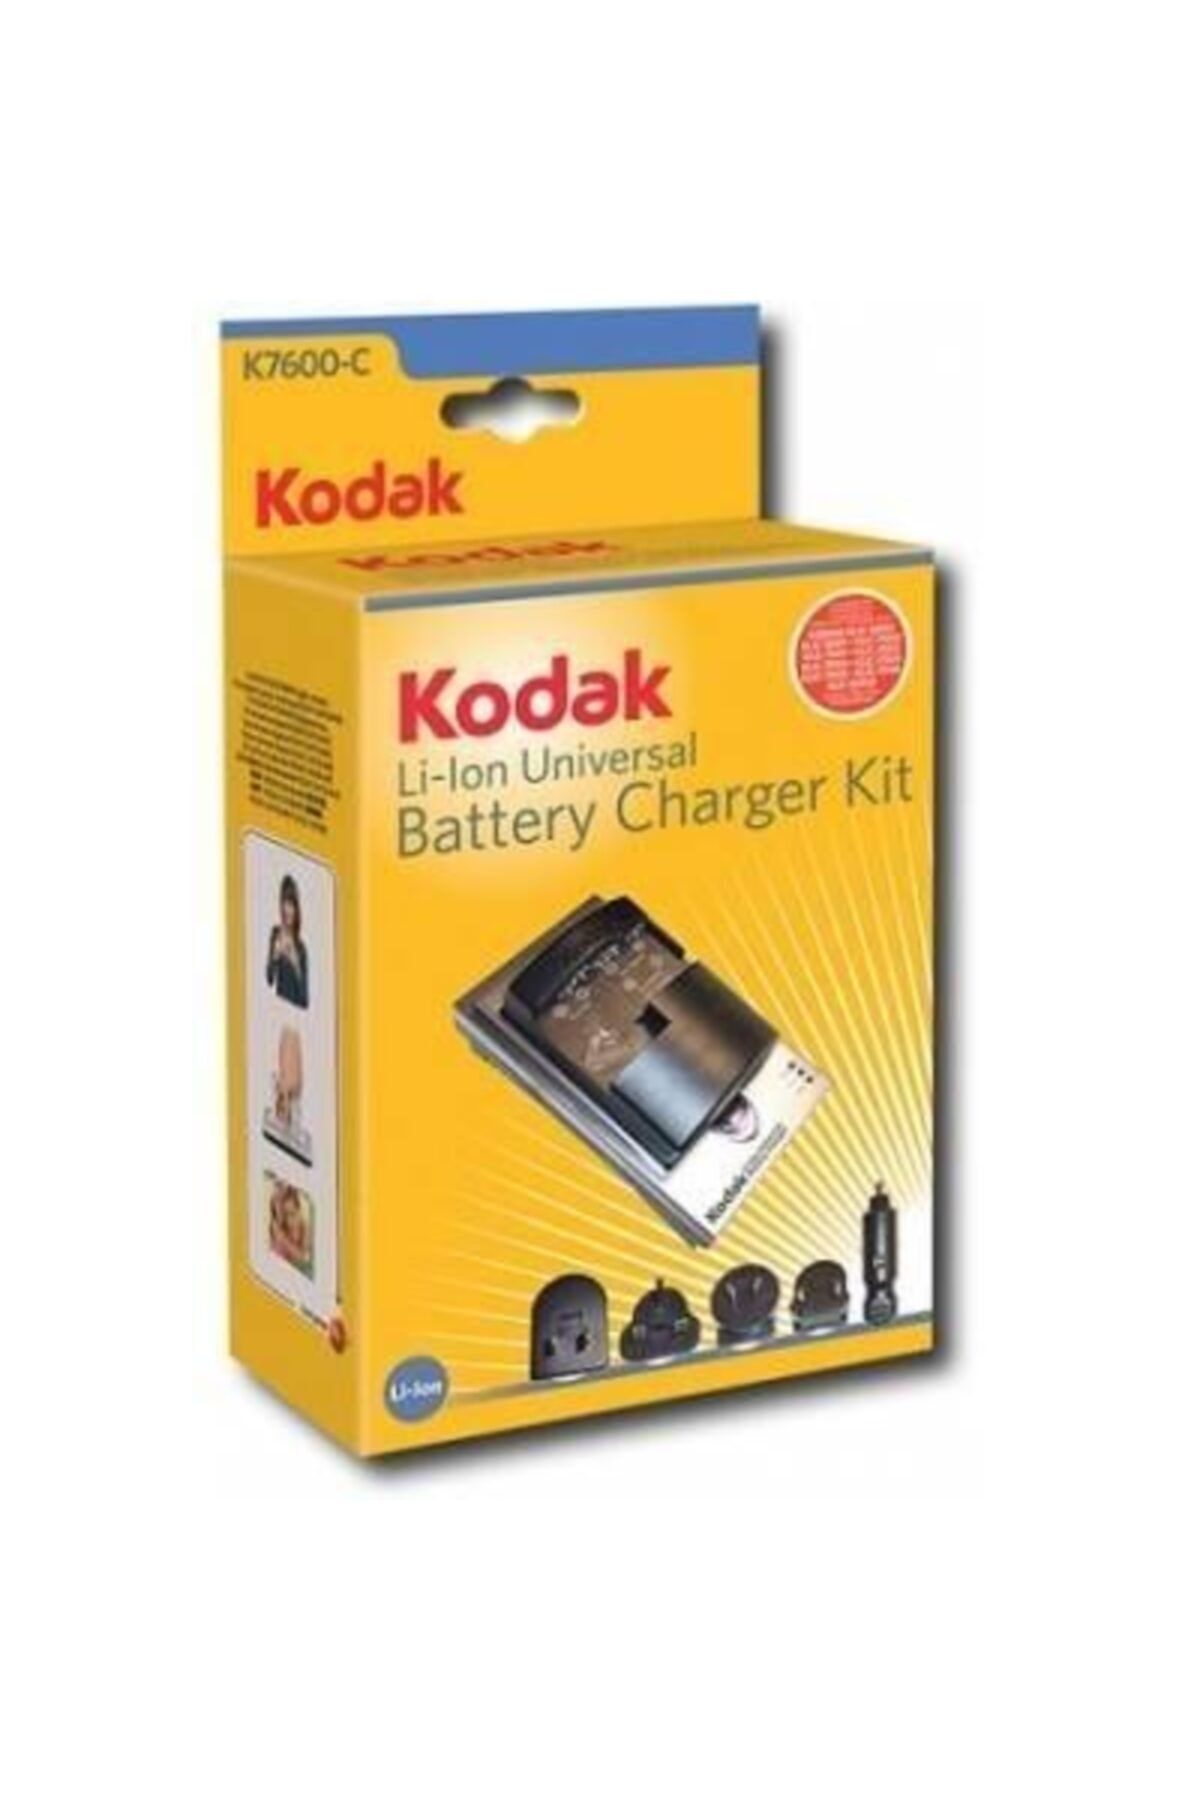 Kodak Klic-7000 Batarya Için %100 Orjinal Şarj Aleti K7600-c Araç Kiti